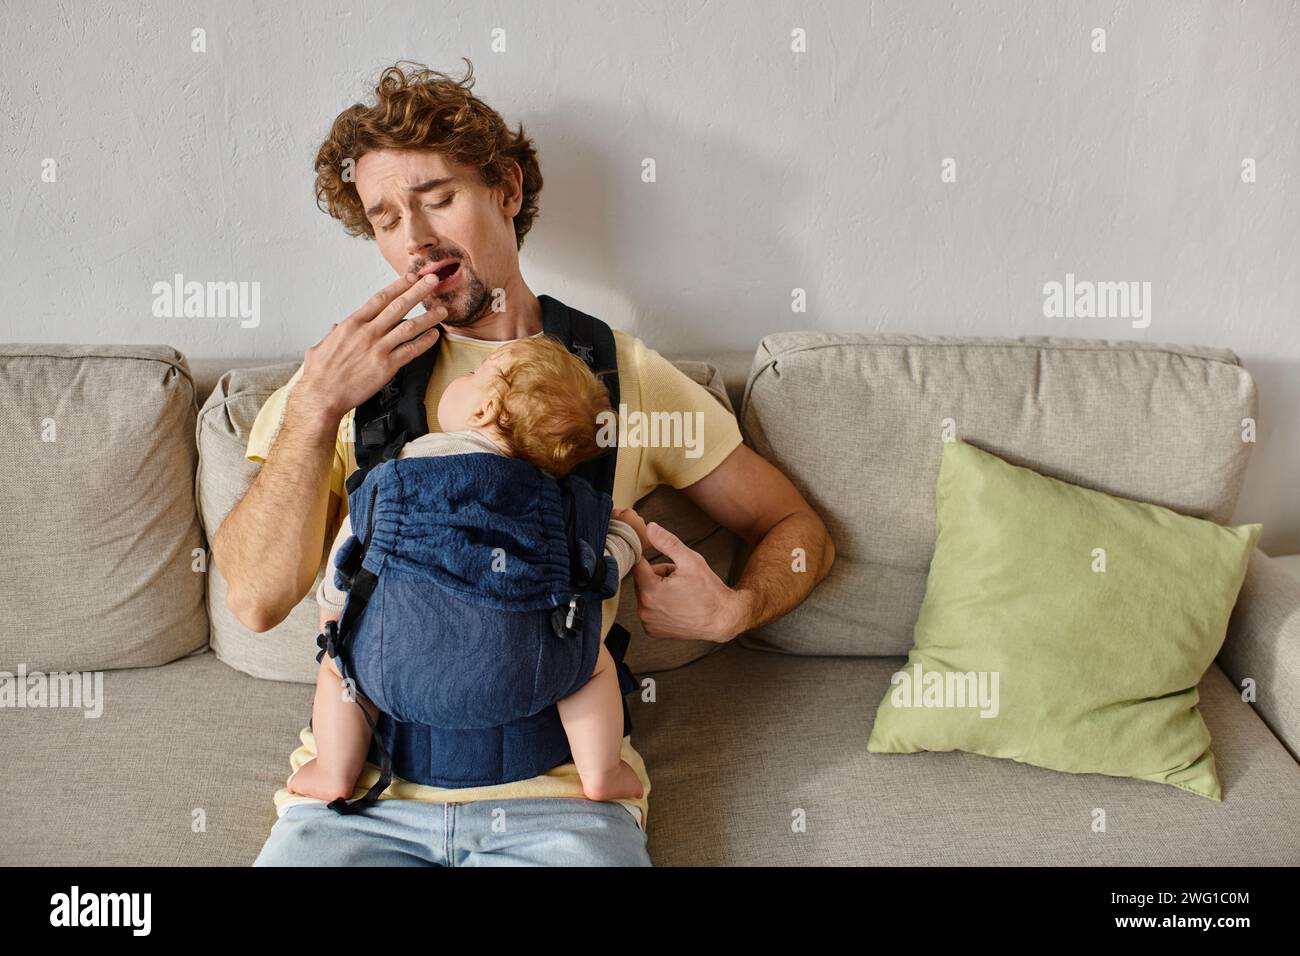 Müder Mann mit lockigen Haaren gähnt mit Kleinkind Sohn in Babytrage im Wohnzimmer, Vaterschaft und Liebe Stockfoto